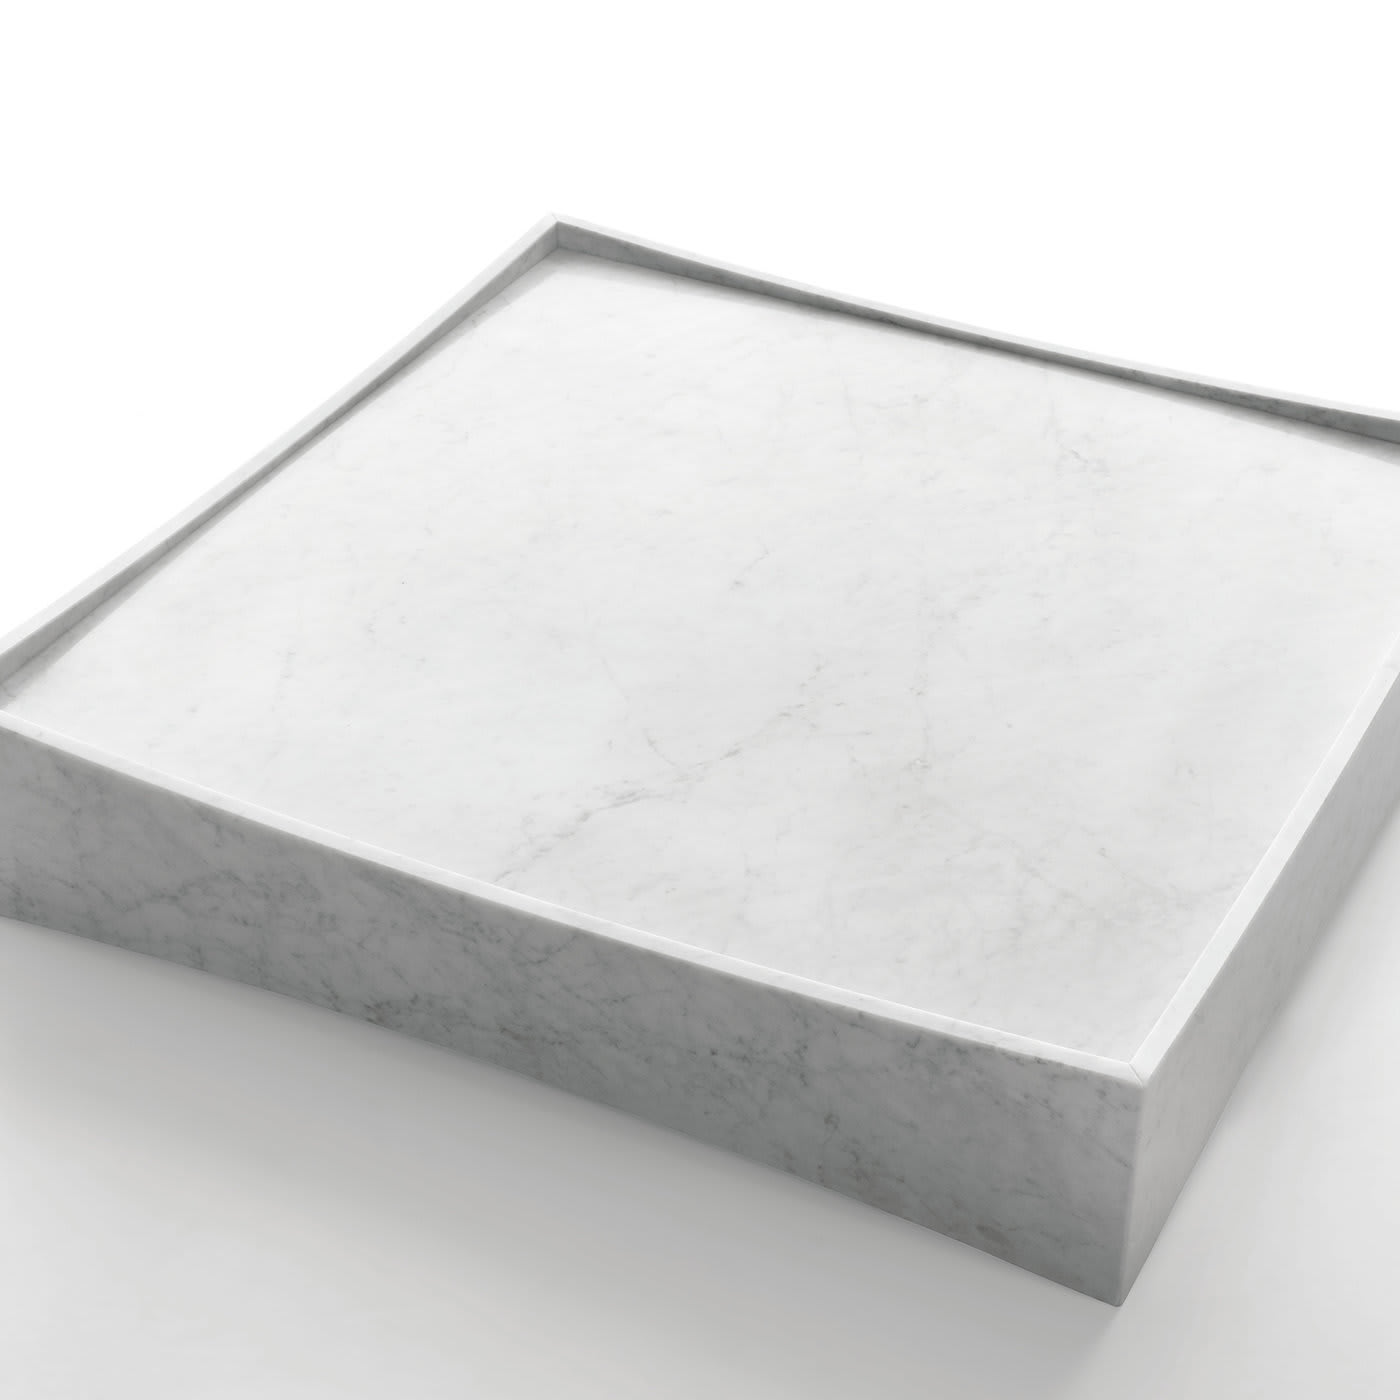 White GALLERY LOW TABLE - Design Claesson Koivisto Rune 2011 - Marsotto Edizioni